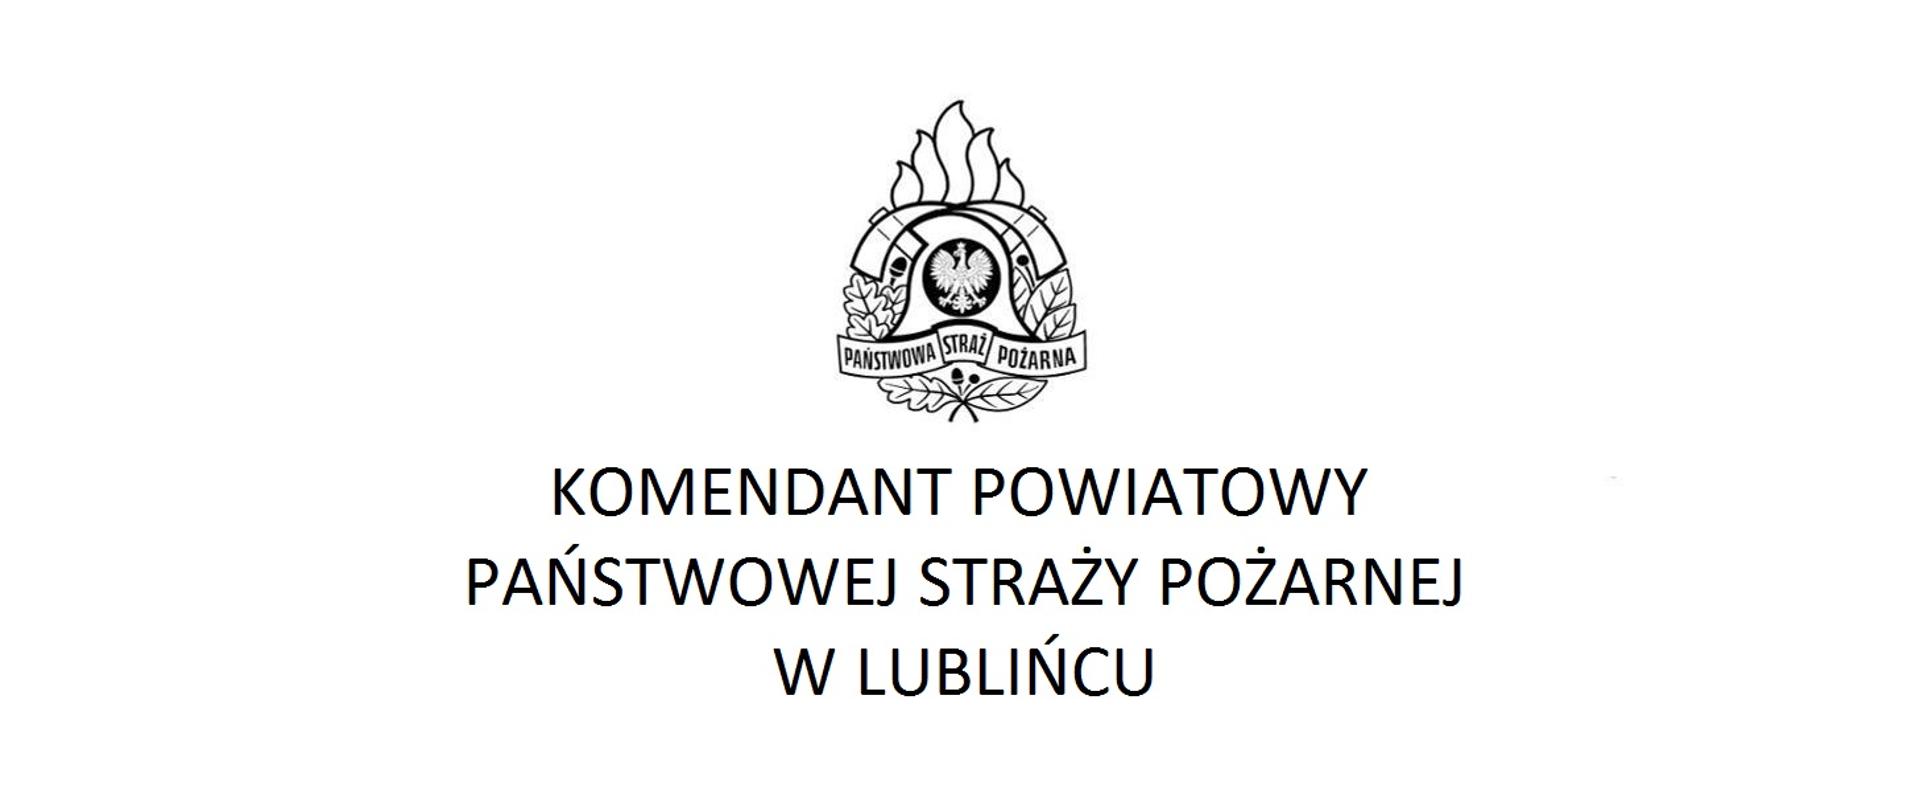 W centralnej części logo Państwowej Straży Pożarnej
poniżej tekst:
Komendant Powiatowy Państwowej Straży Pożarnej w Lublińcu